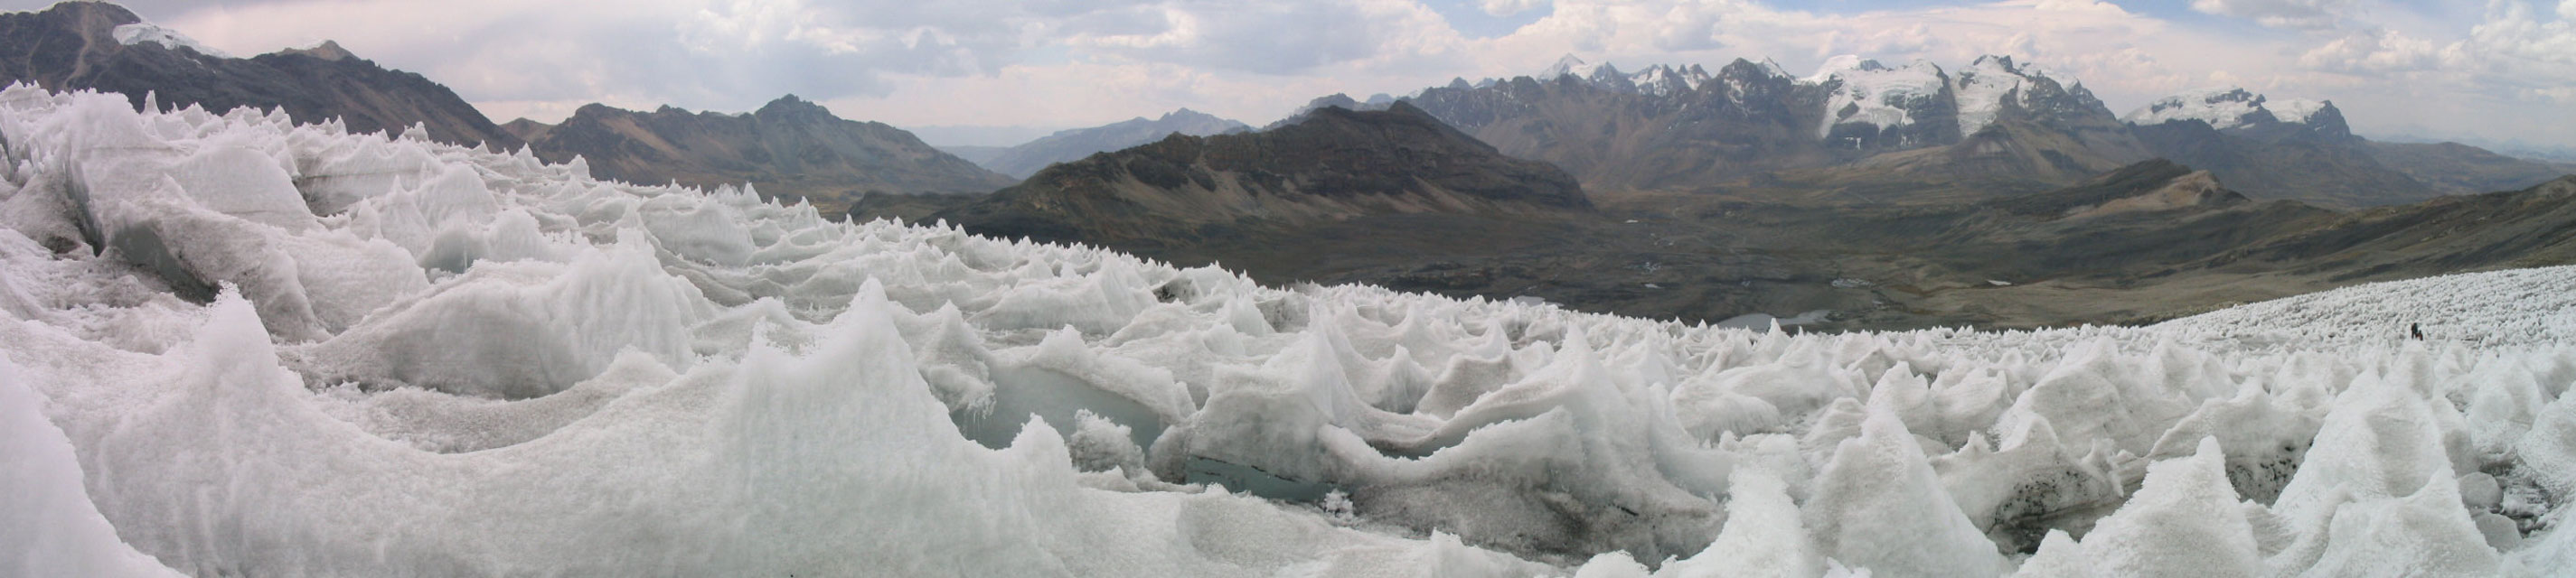 Vista panorámica del glaciar del Nevado Pastoruri (5240 m) con el Raria (5576 m) y el Huarapasca (5418 m) al fondo